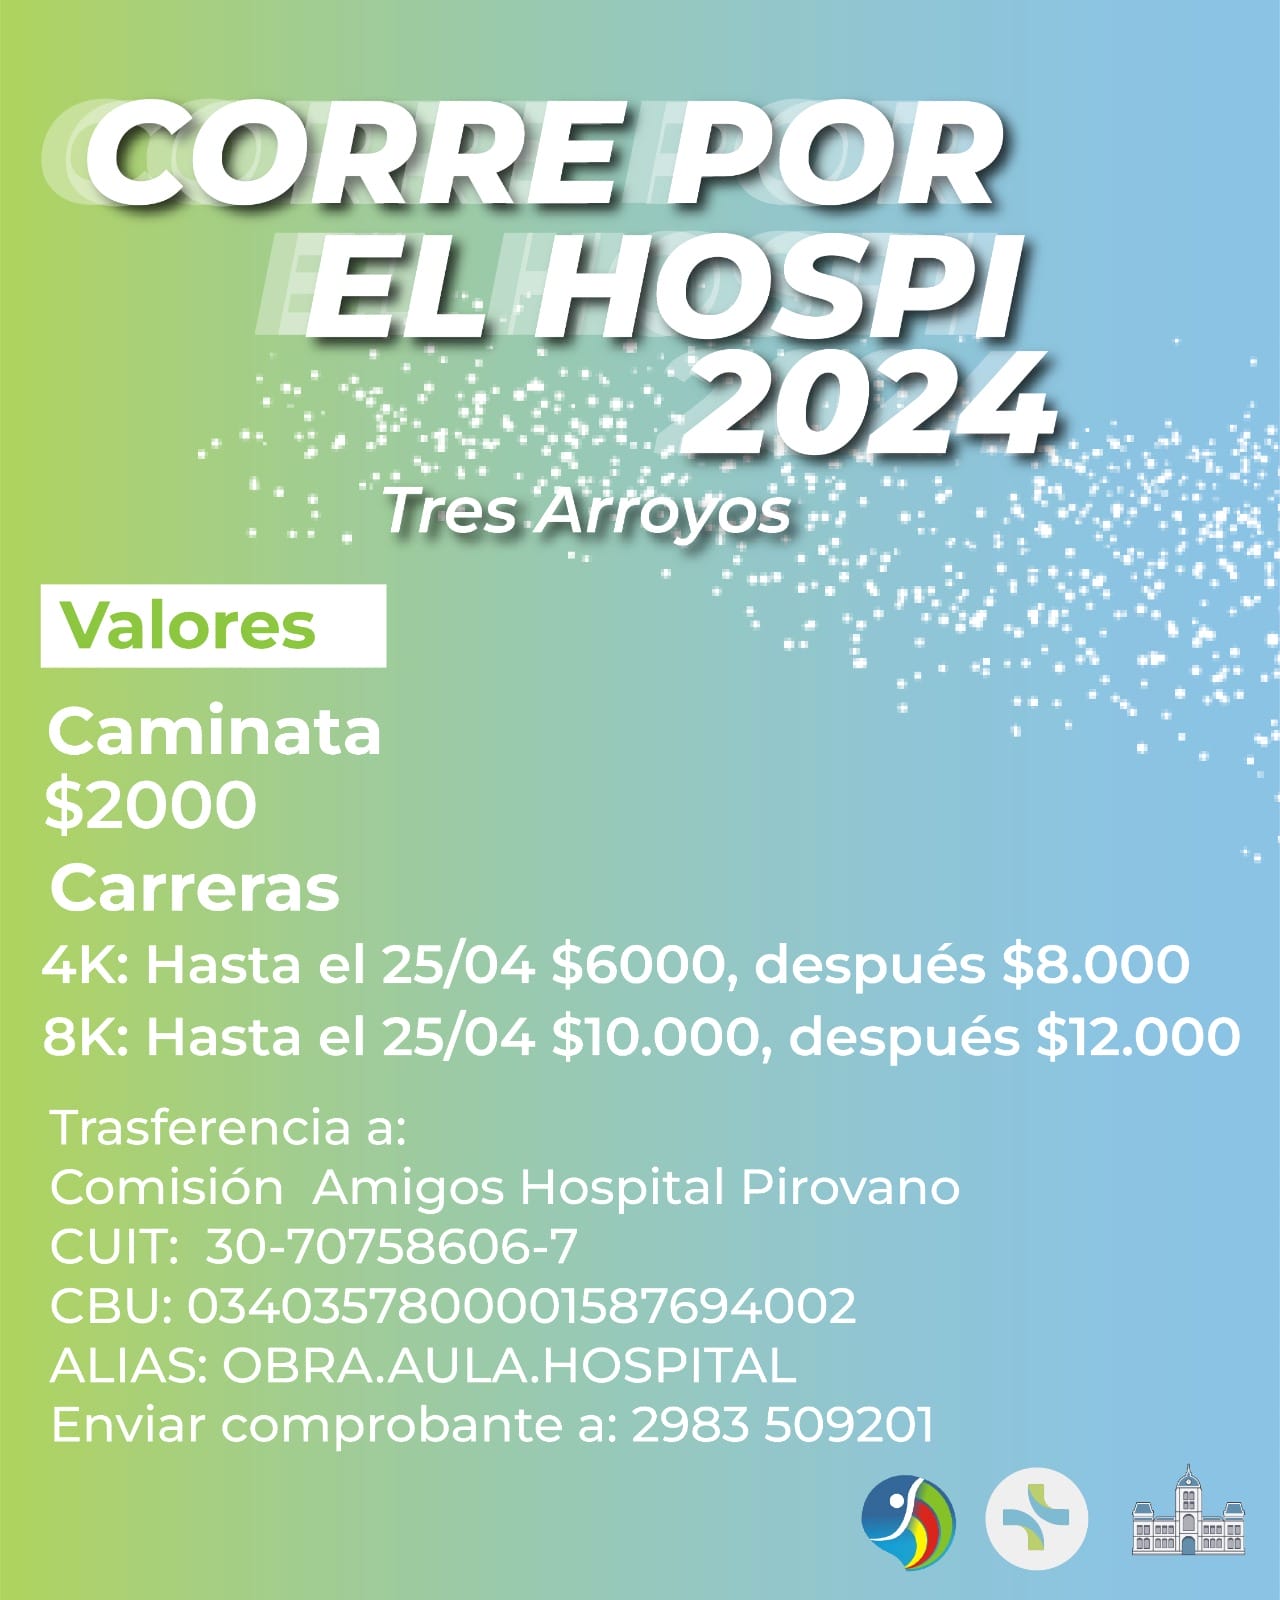 Corre por El Hospi 2024: invitan a la comunidad a participar